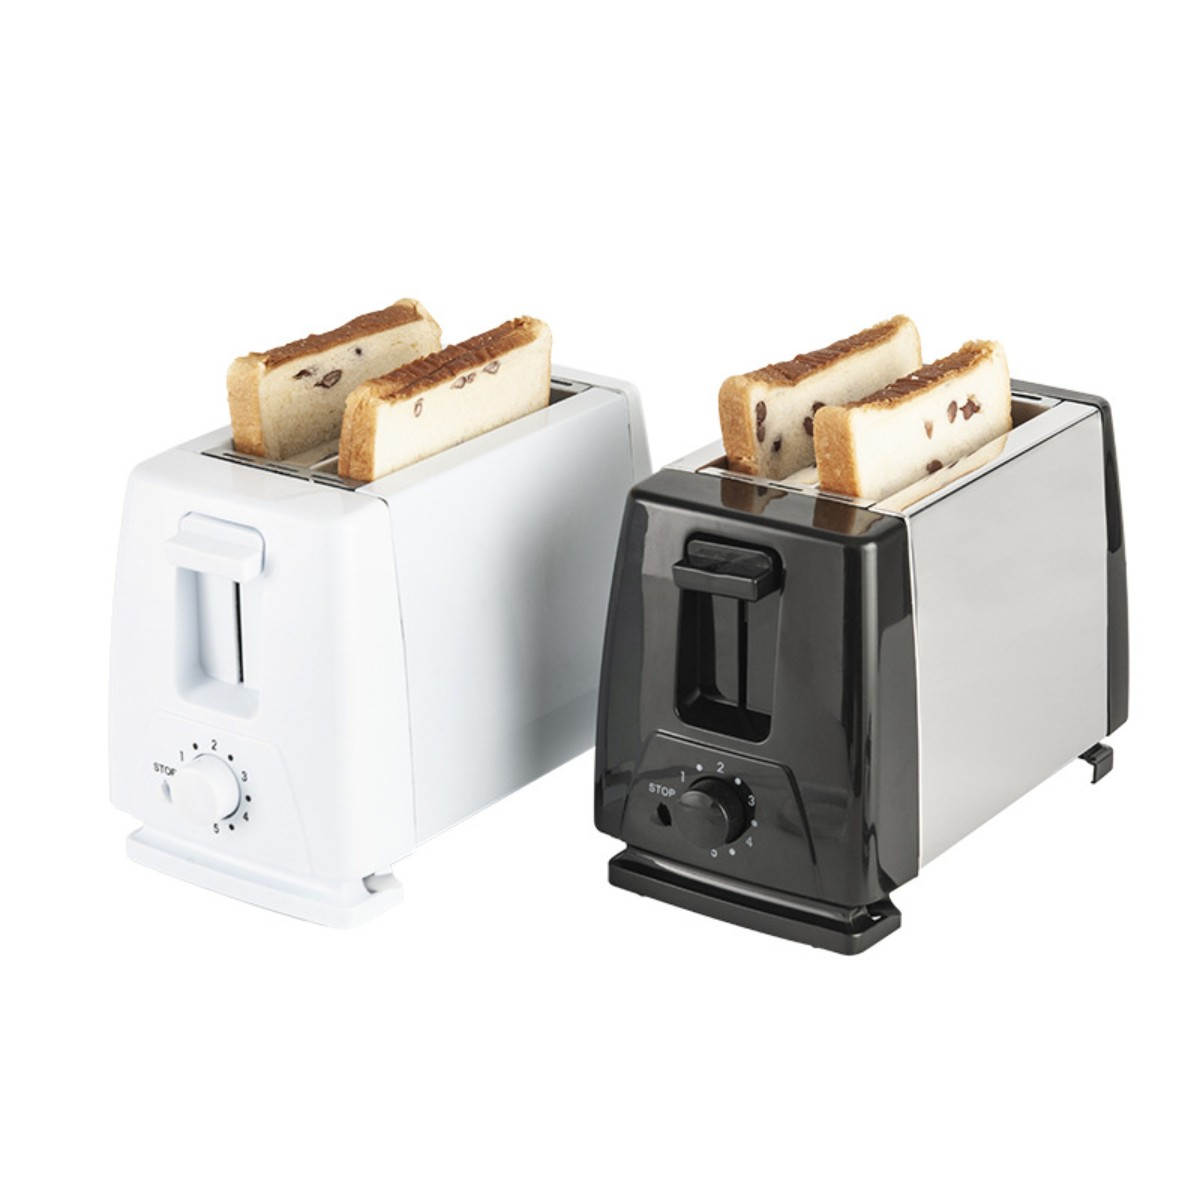 2) Sandwich Schwarz Toaster Toaster Maker Toaster Schwarz 220V Watt, Frühstück Brotbackautomat Schlitze: (750 FEI